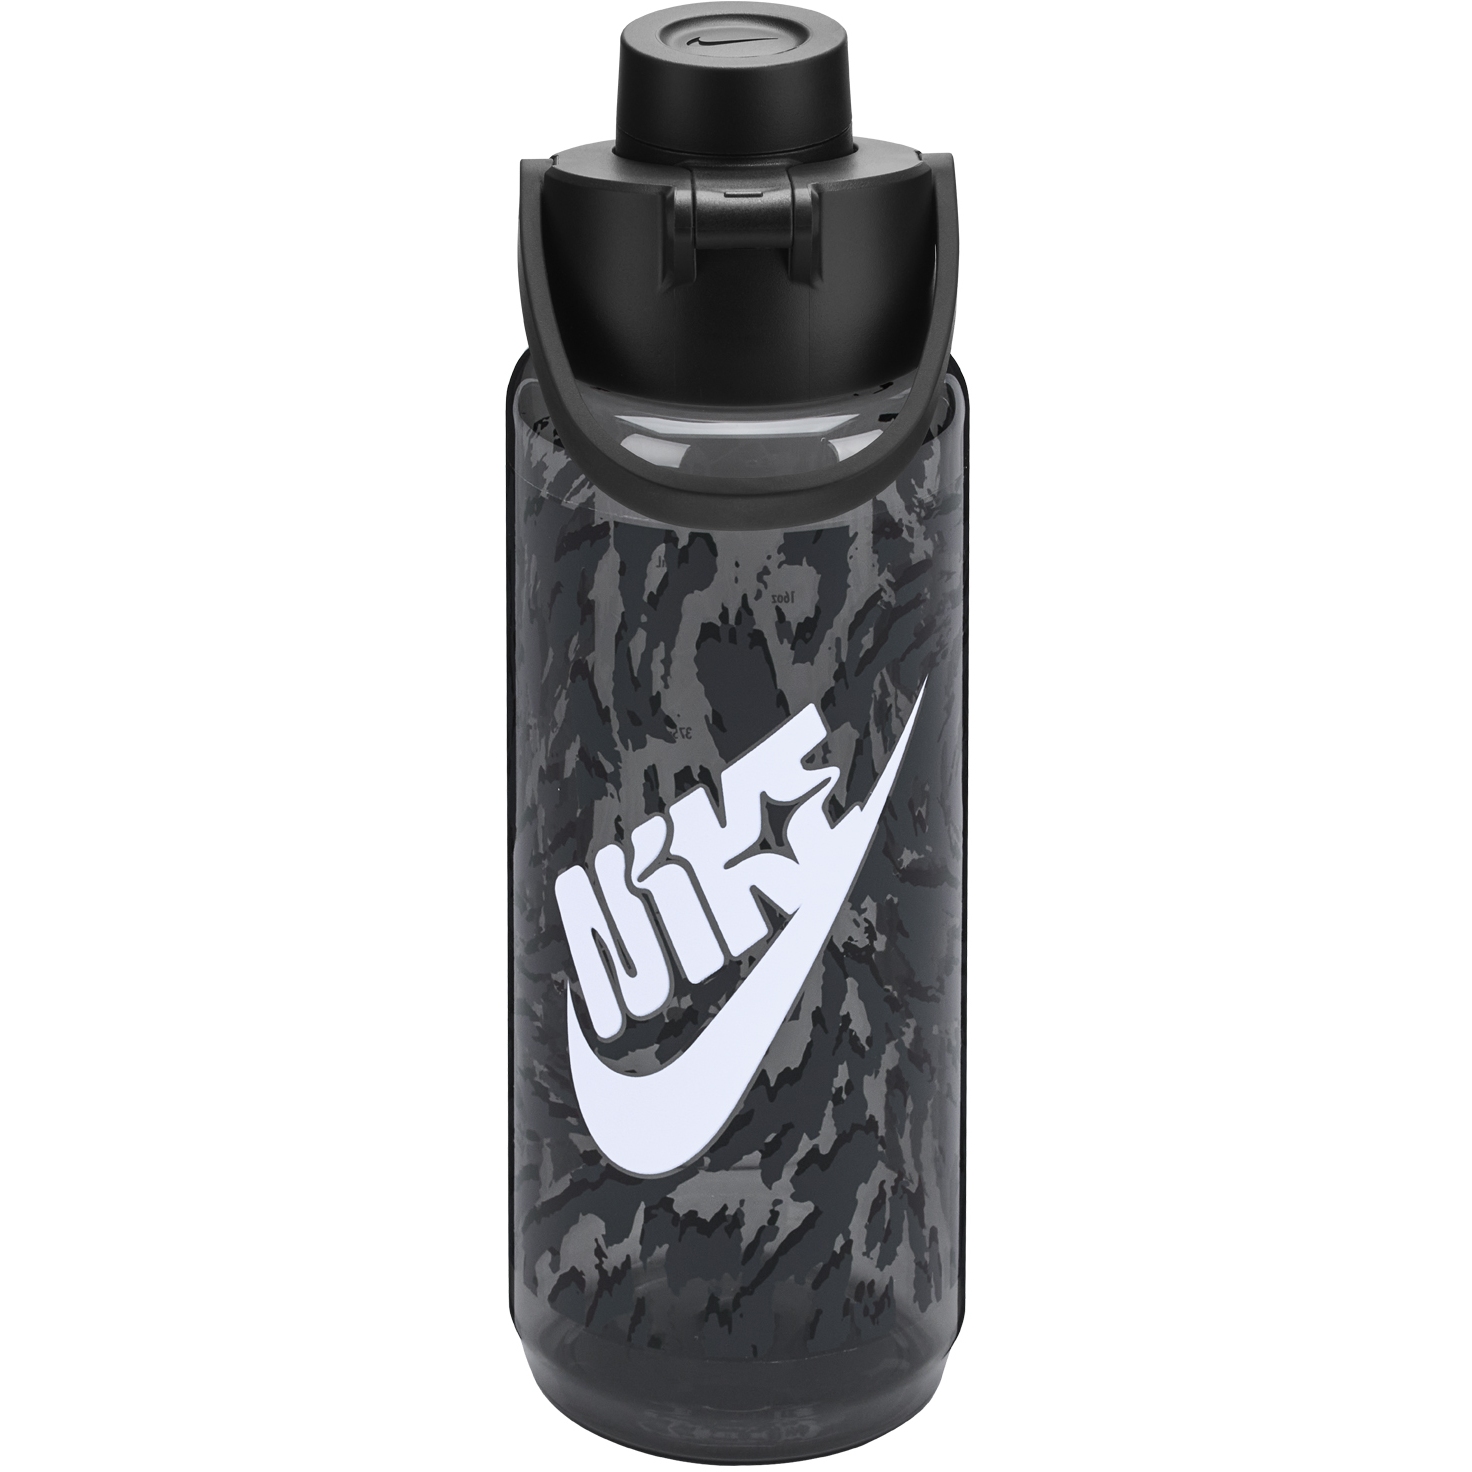 Productfoto van Nike Tritan Renew Recharge Drinkfles 24 oz / 709ml - smoke grey/black/white 041